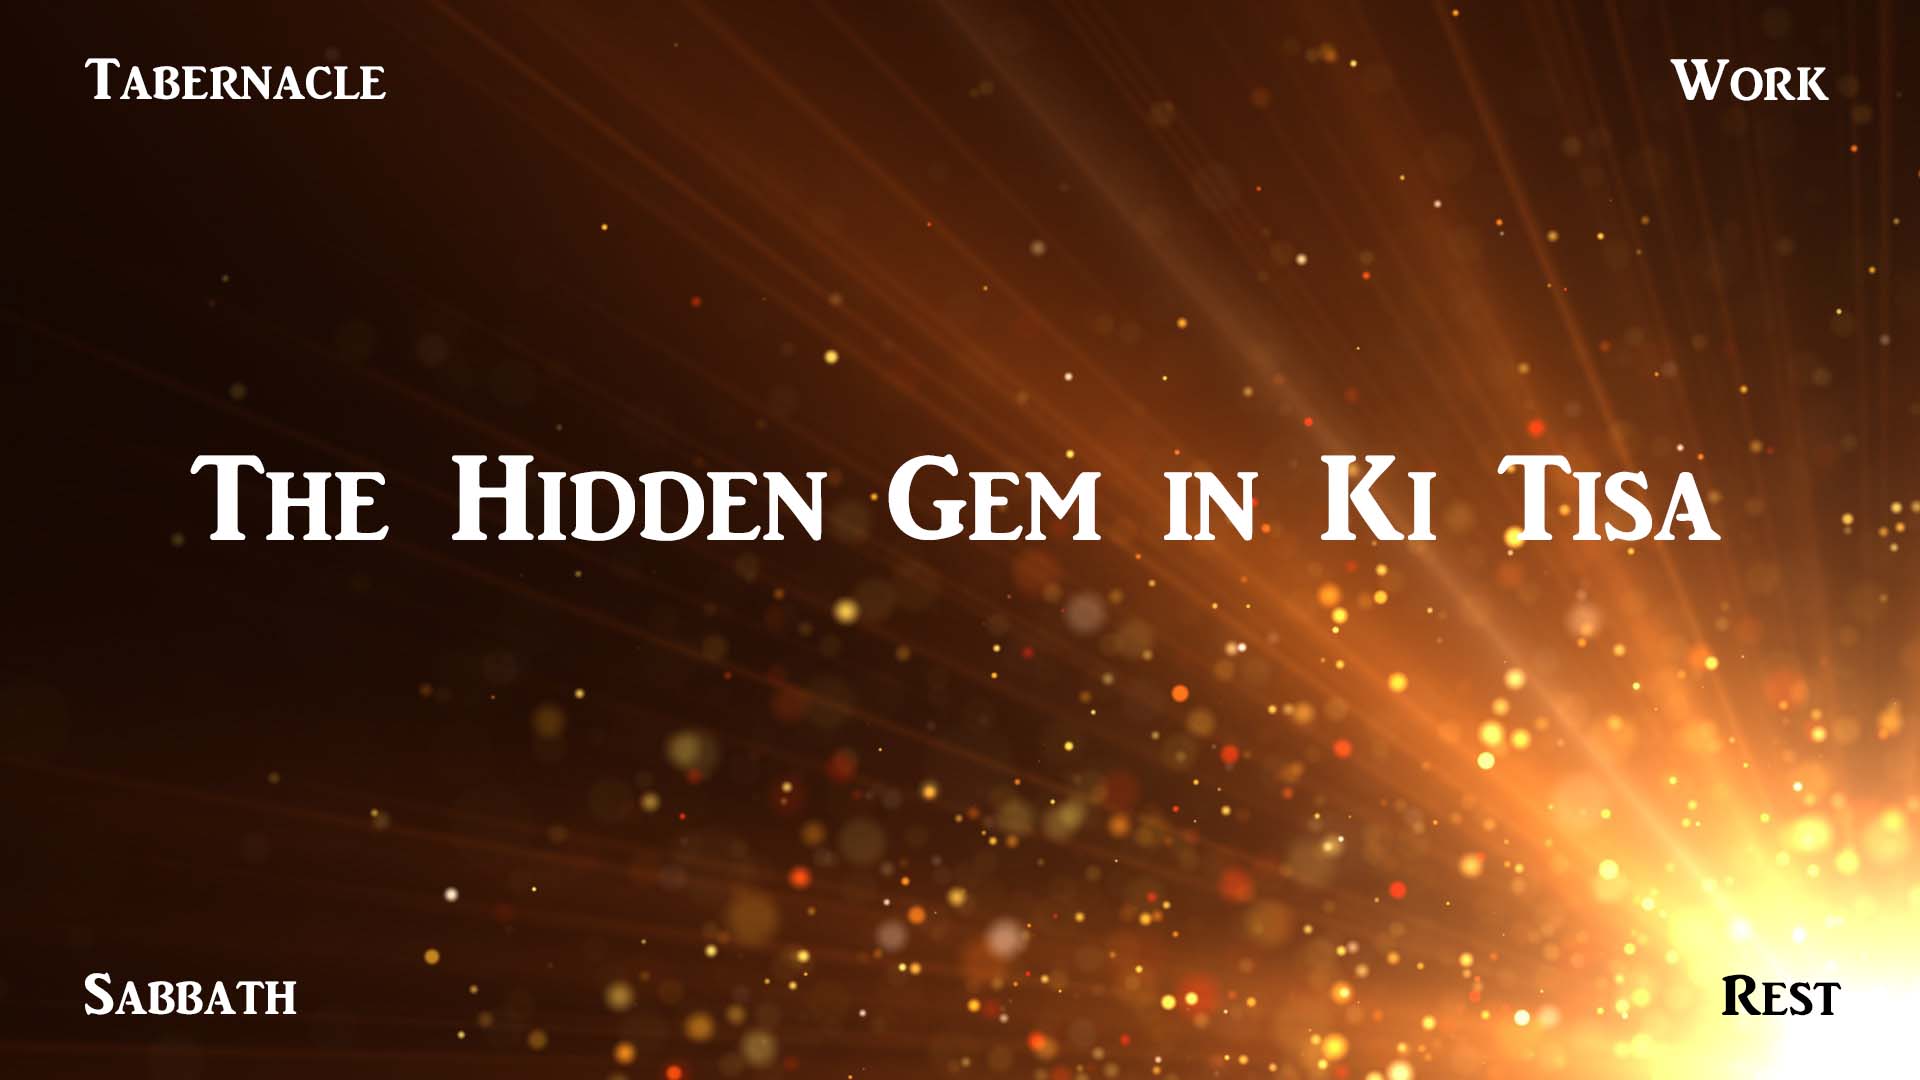 The Hidden Gem in Ki Tisa